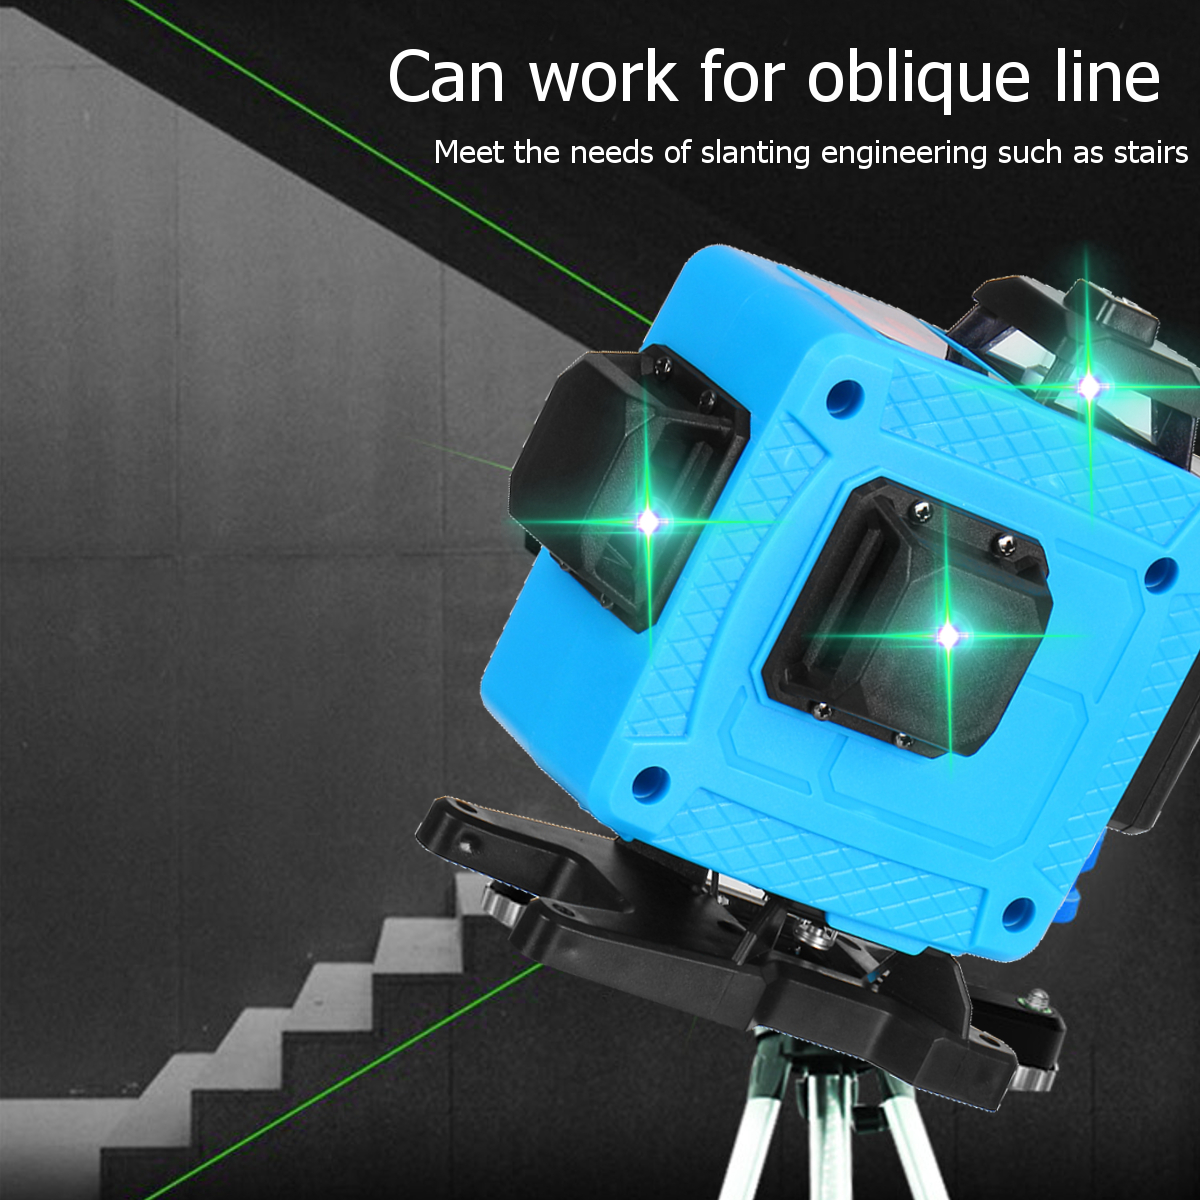 16-Line-4D-Laser-Level-Green-Light-Auto-Self-Leveling-Cross-360deg-Rotary-Measure-1740212-11